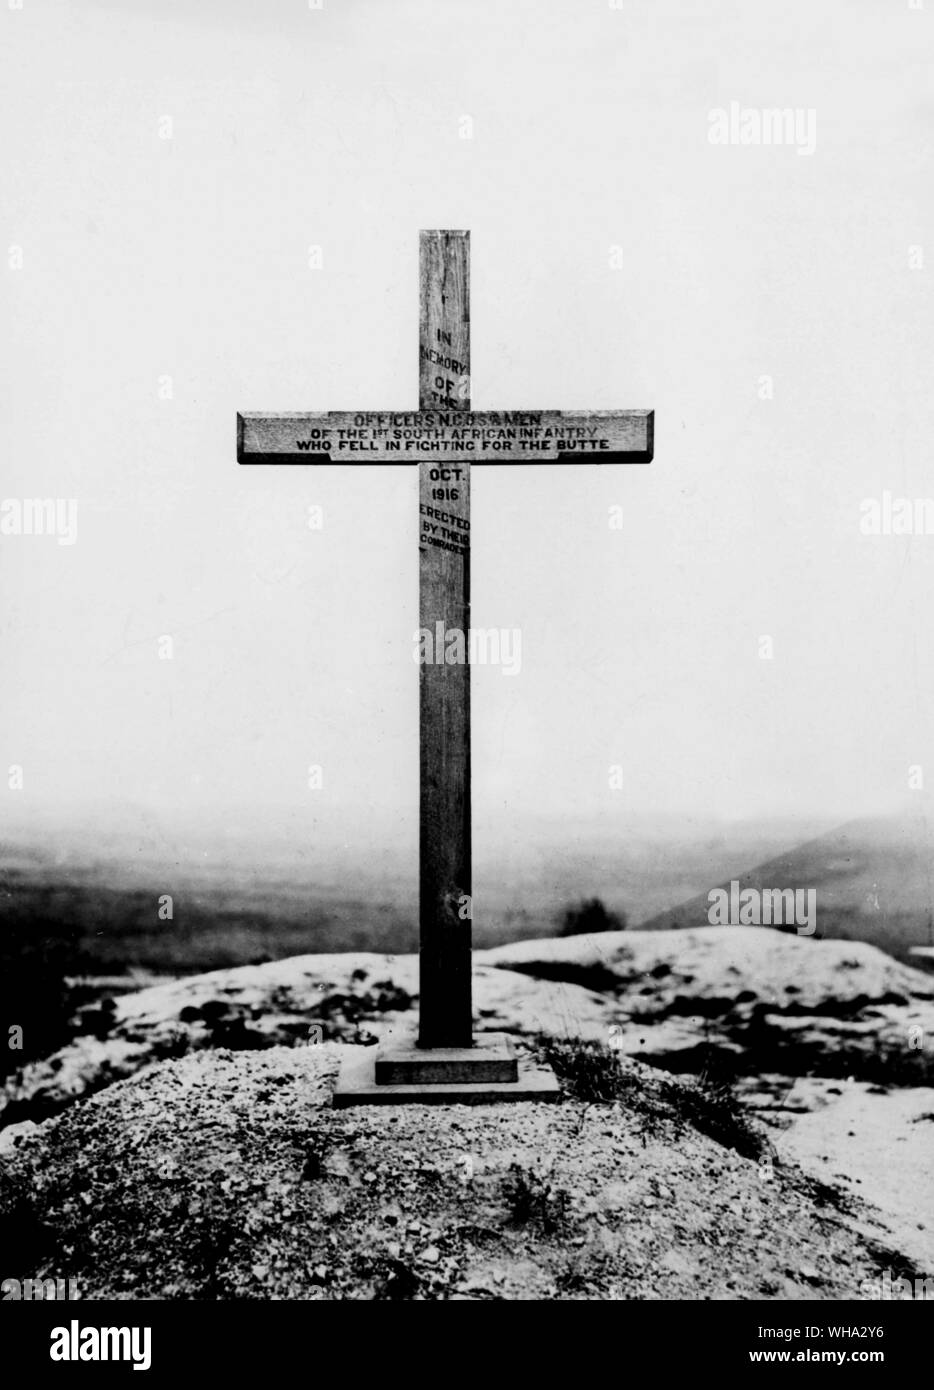 WW1 : monument de guerre à la hommes de la 1re d'infanterie d'Afrique du Sud qui sont tombés dans la lutte pour la butte, 1916. Banque D'Images